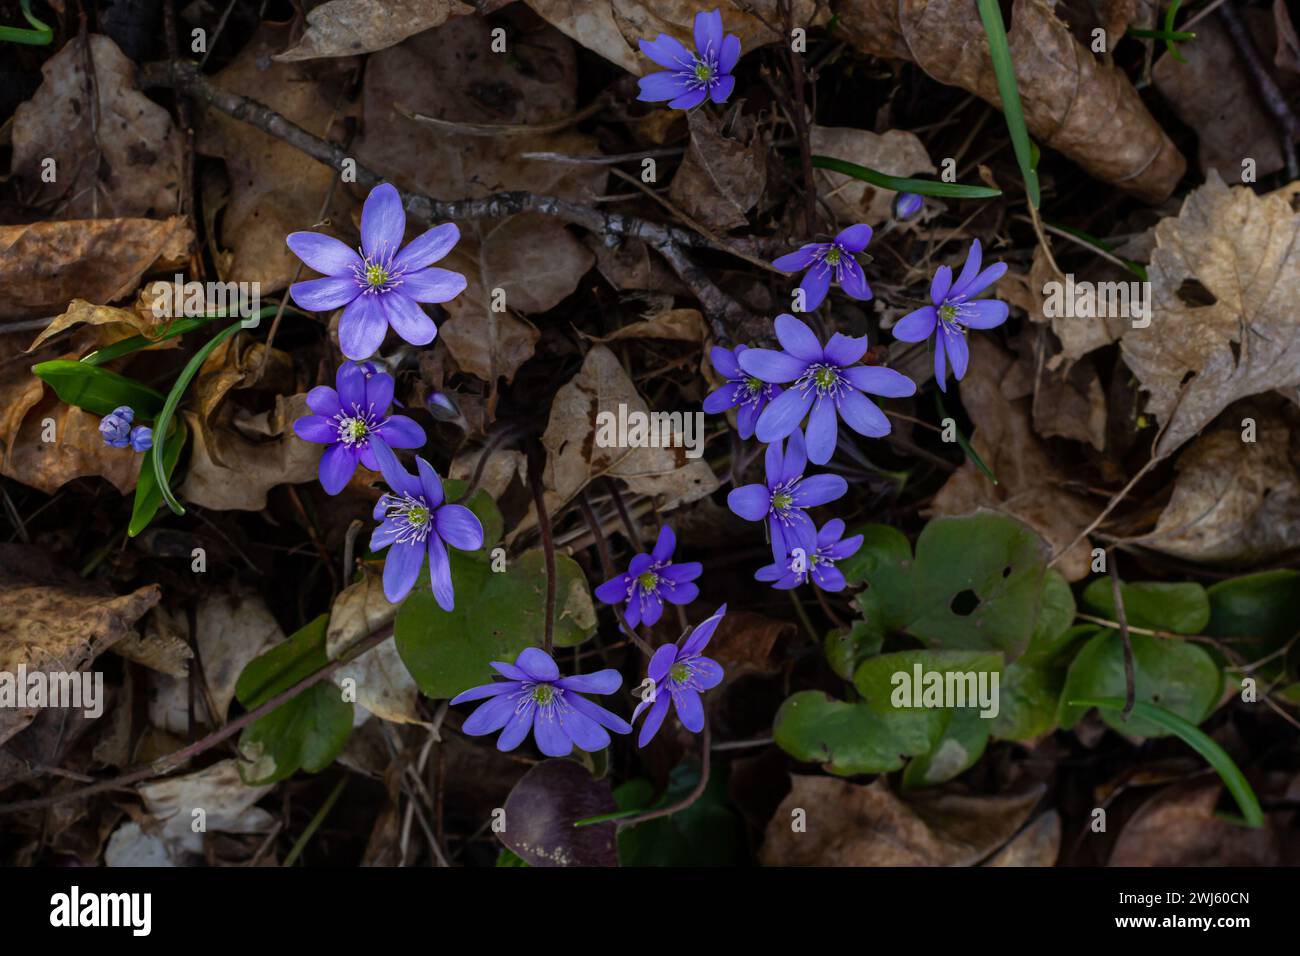 Bella macro ripresa di un primo singolo fiore selvatico grande Hepatitis Hepatitis transylvanica blu che inizia a fiorire tra foglie secche all'inizio della primavera. Foto Stock